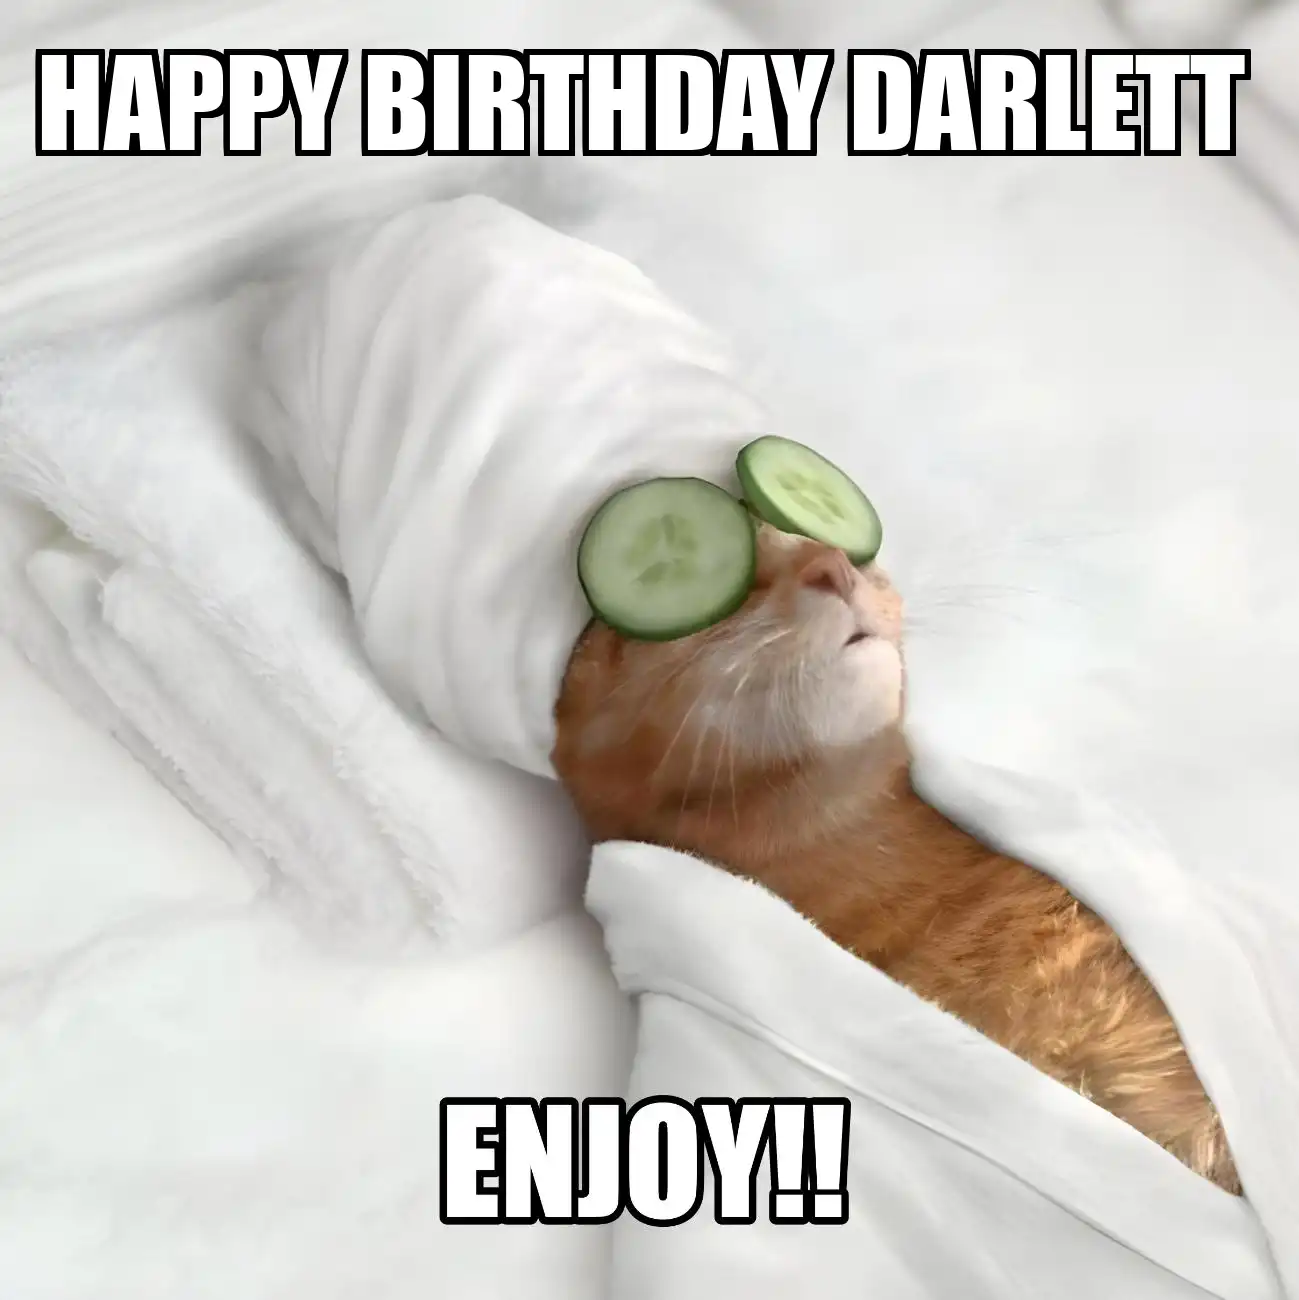 Happy Birthday Darlett Enjoy Cat Meme